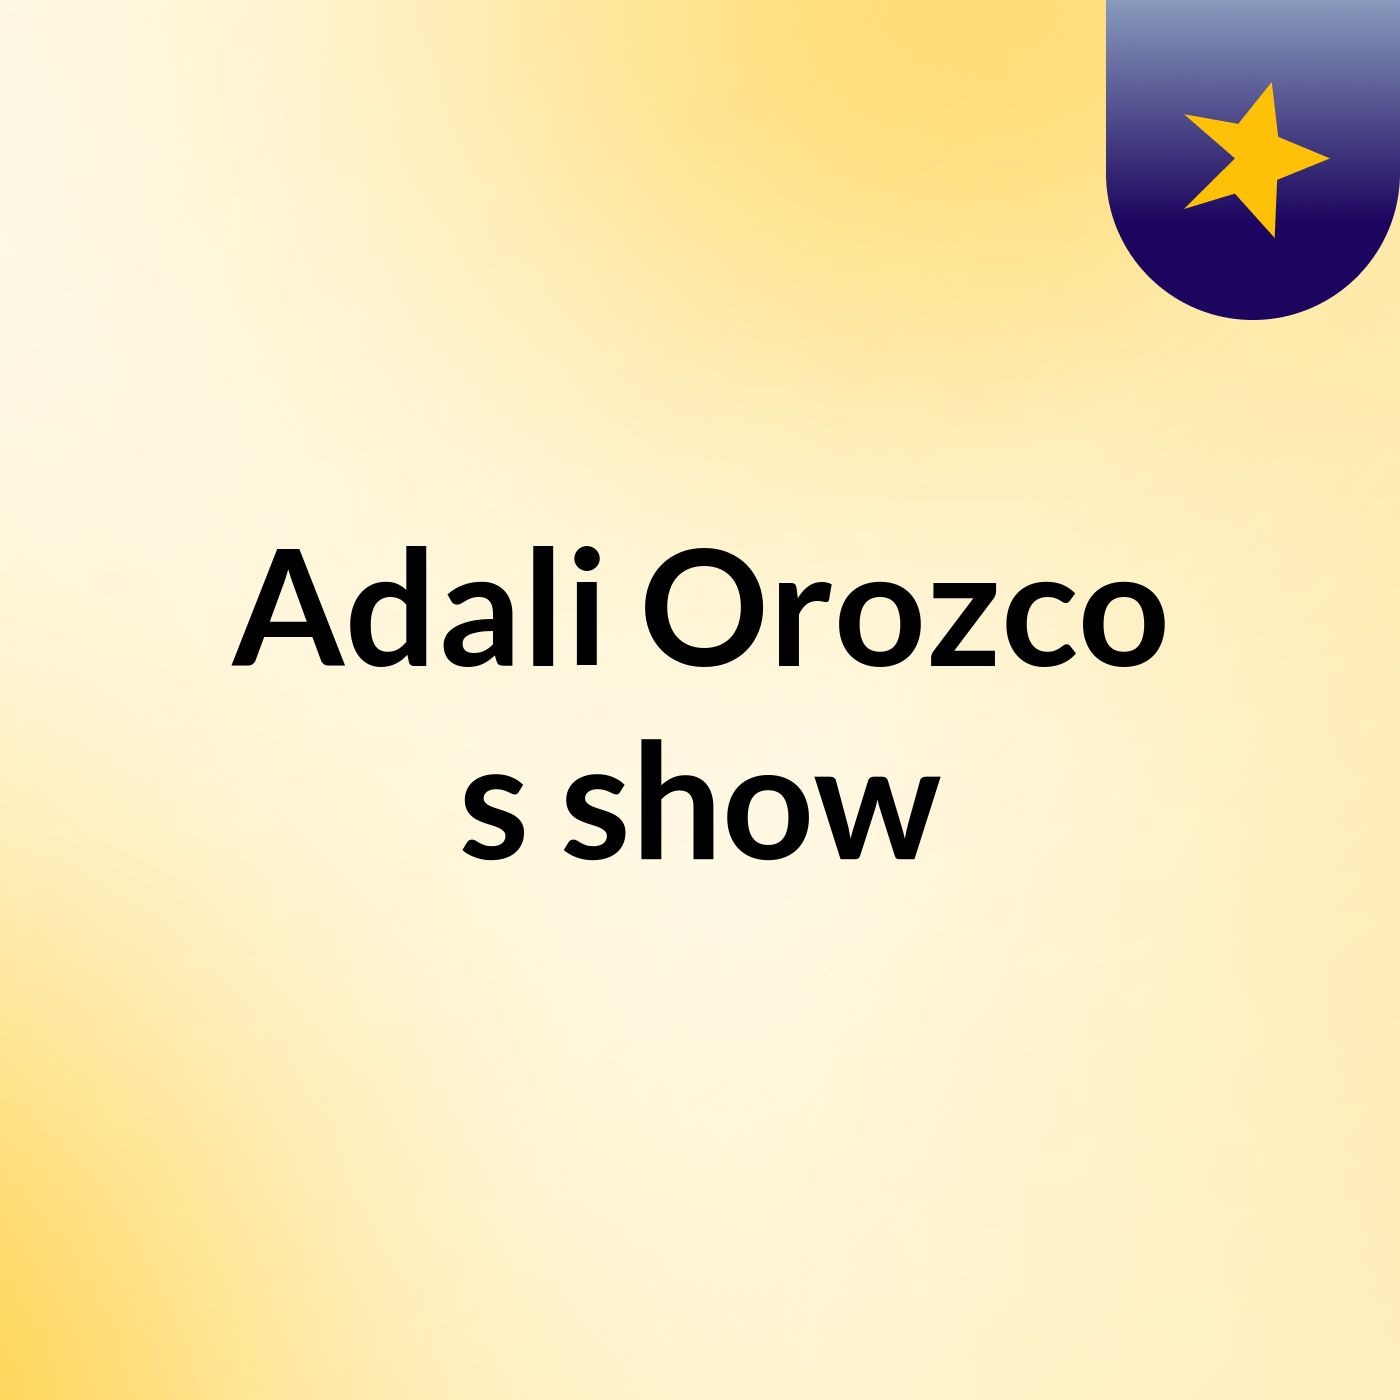 Adali Orozco's show